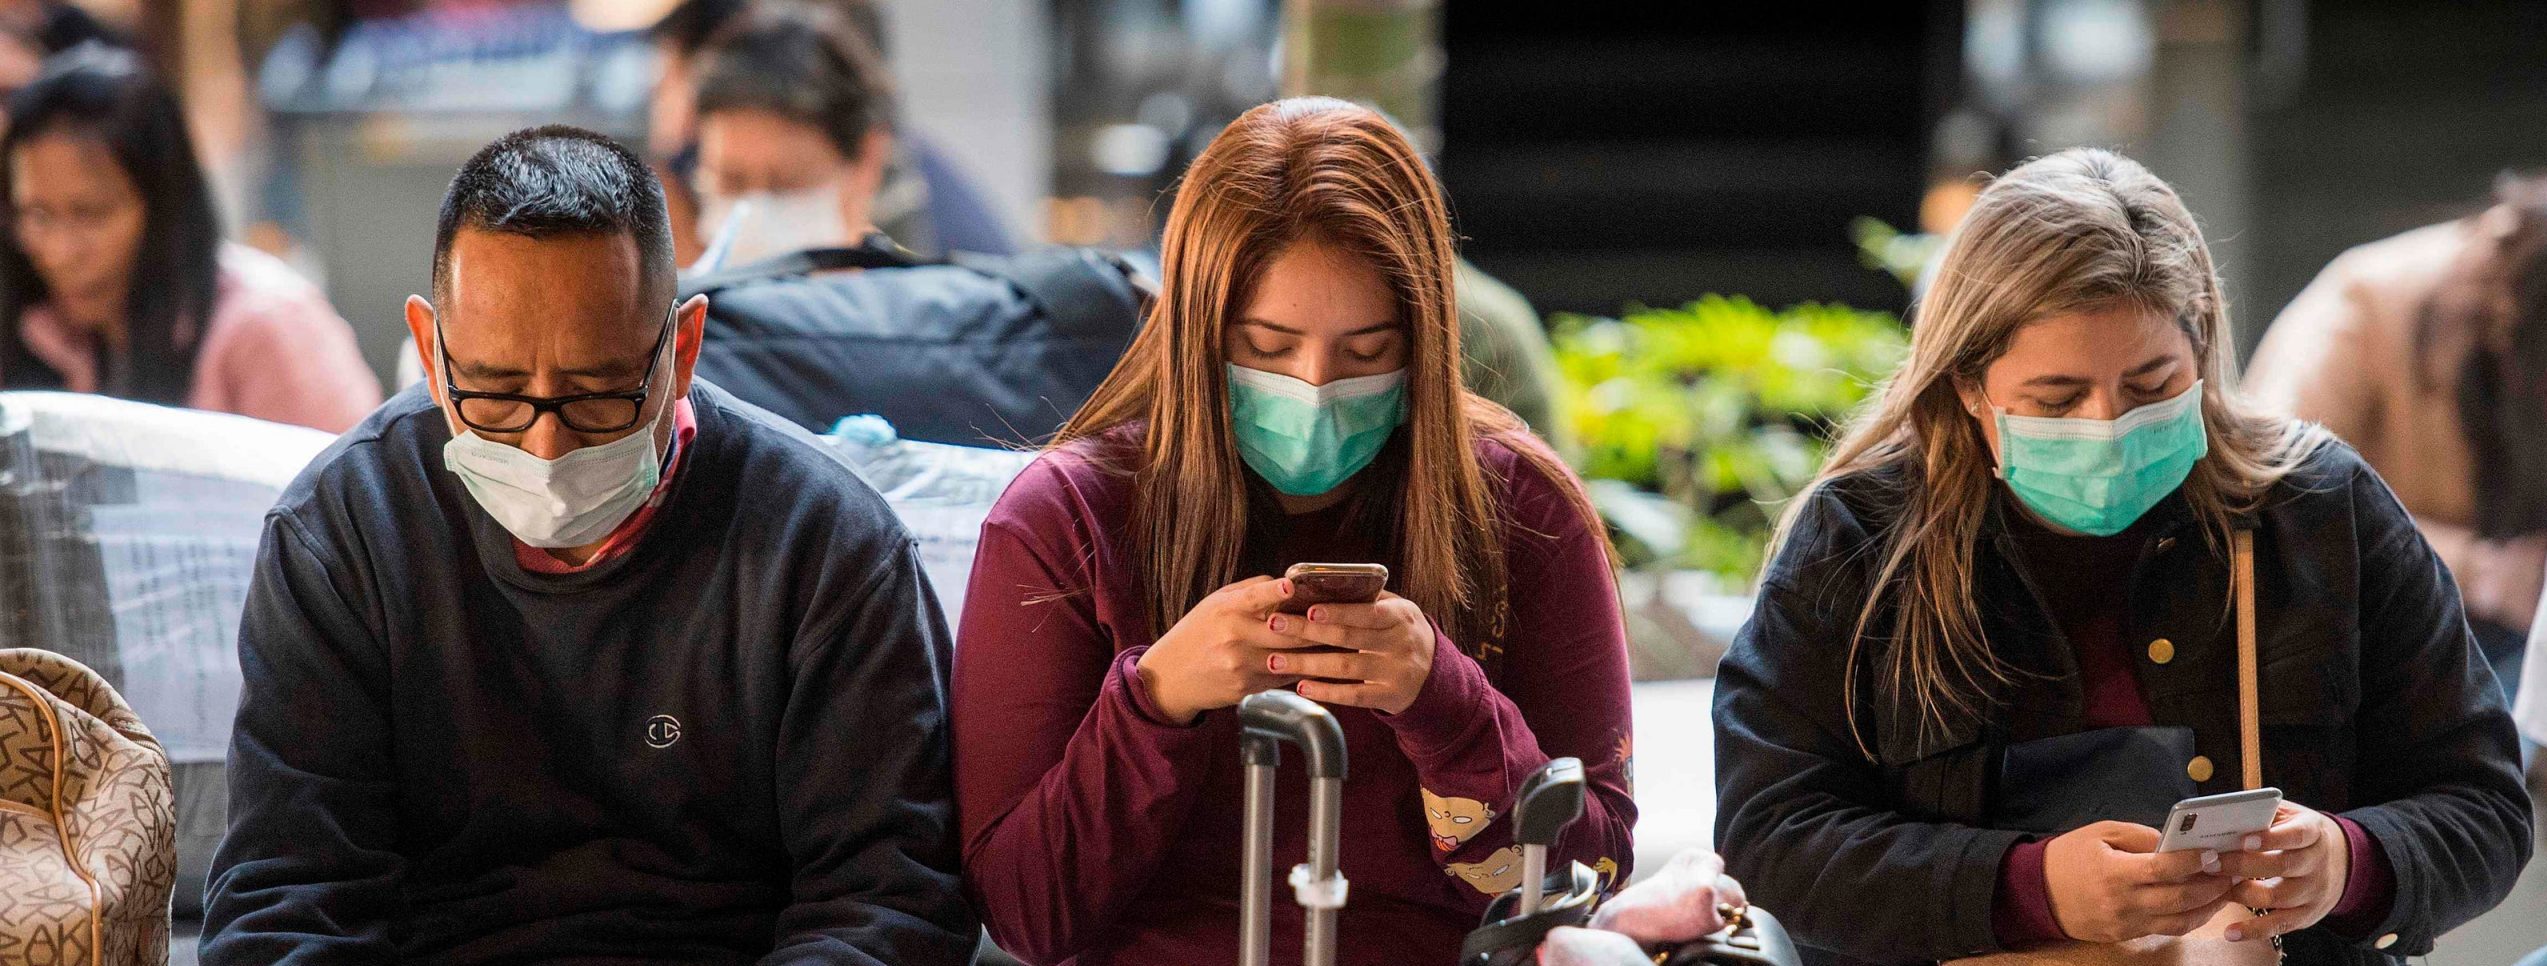 Des passagers portent un masque pour se protéger du coronavirus à l'arrivée d'un vol en provenance d'Asie à l'aéroport international de Los Angeles, le 29 janvier 2020. (Source : USA Today)